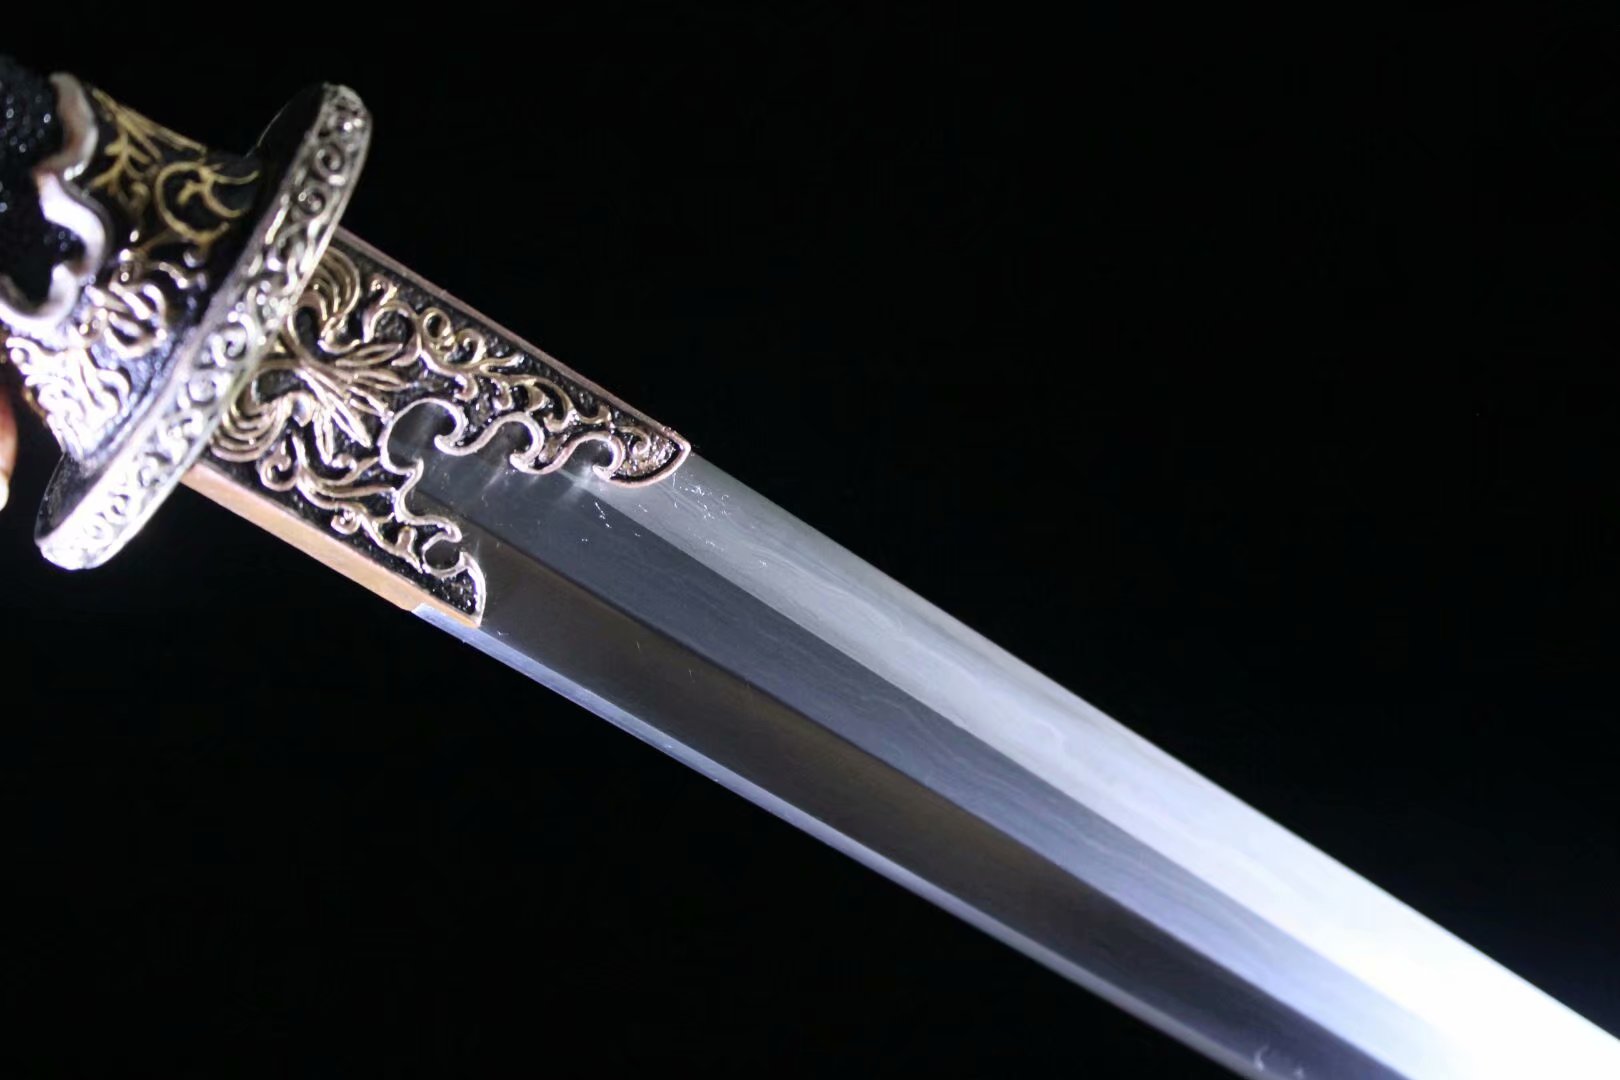 草钢大夏龙雀 - 聚锋堂美术刀剑-名刀复刻,日本武士刀